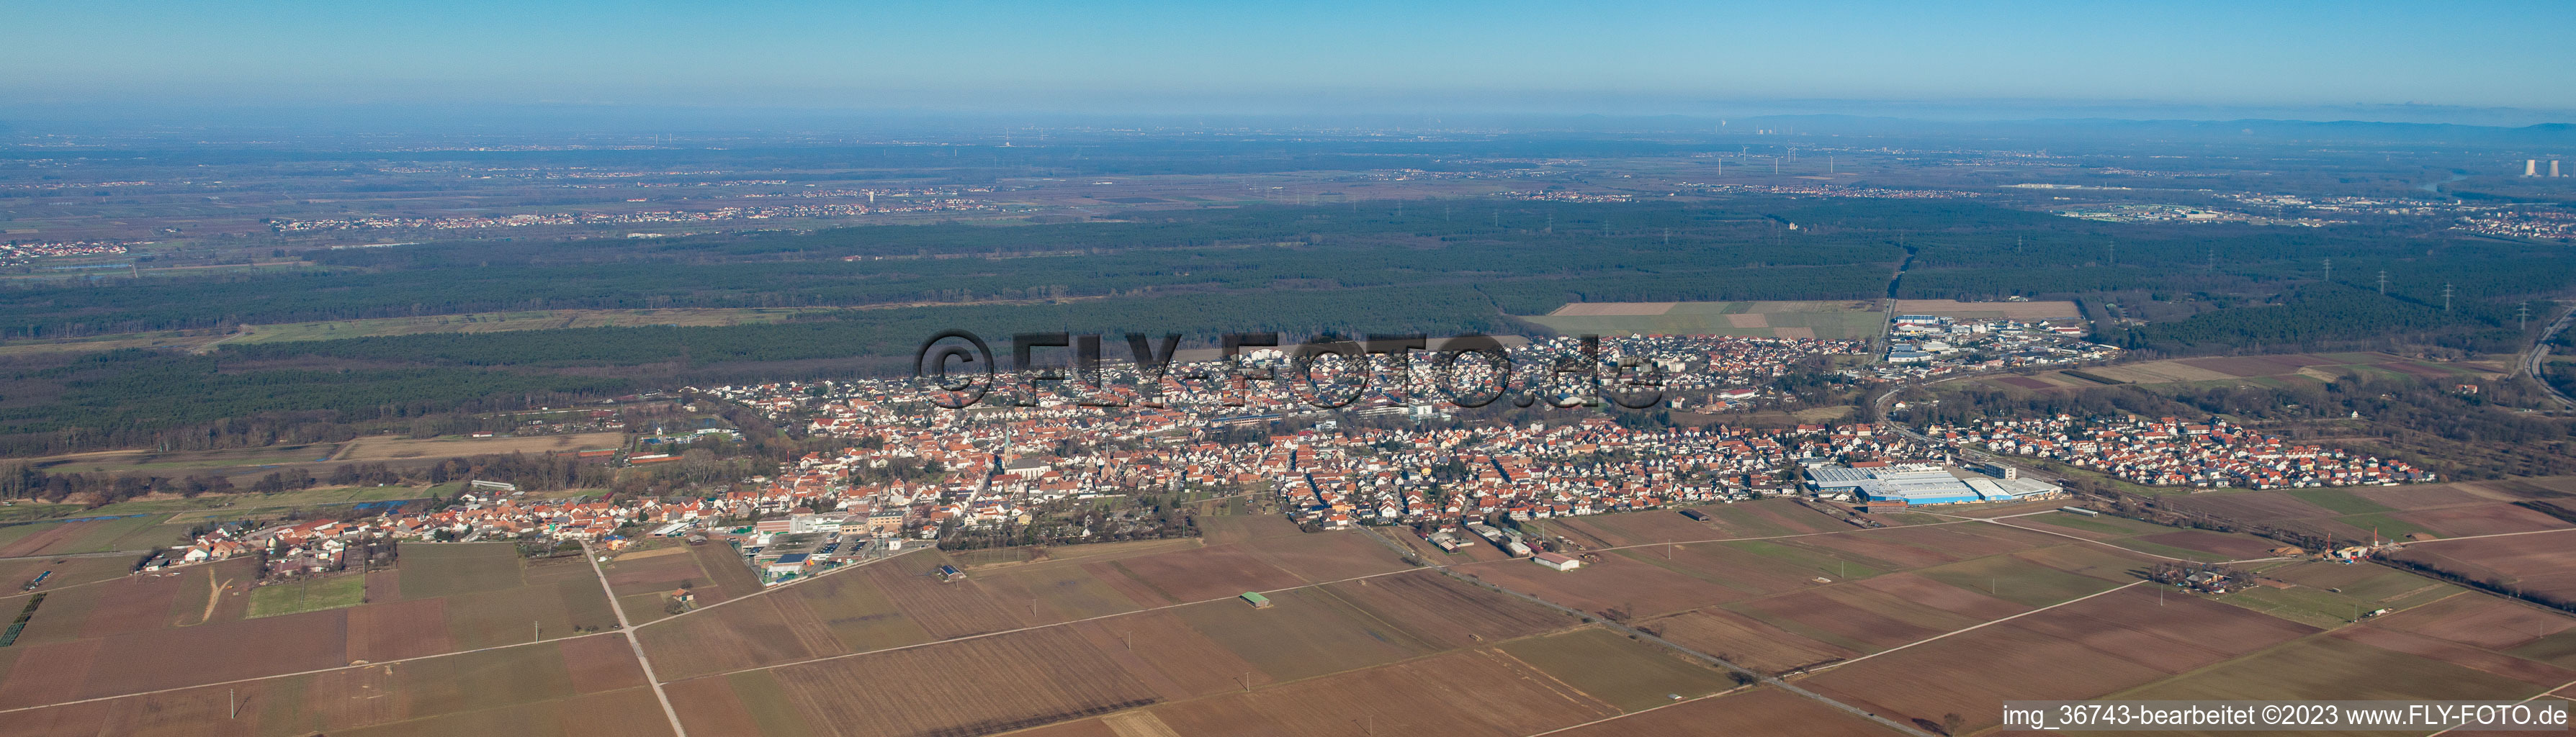 Luftbild von Panorama in Bellheim im Bundesland Rheinland-Pfalz, Deutschland